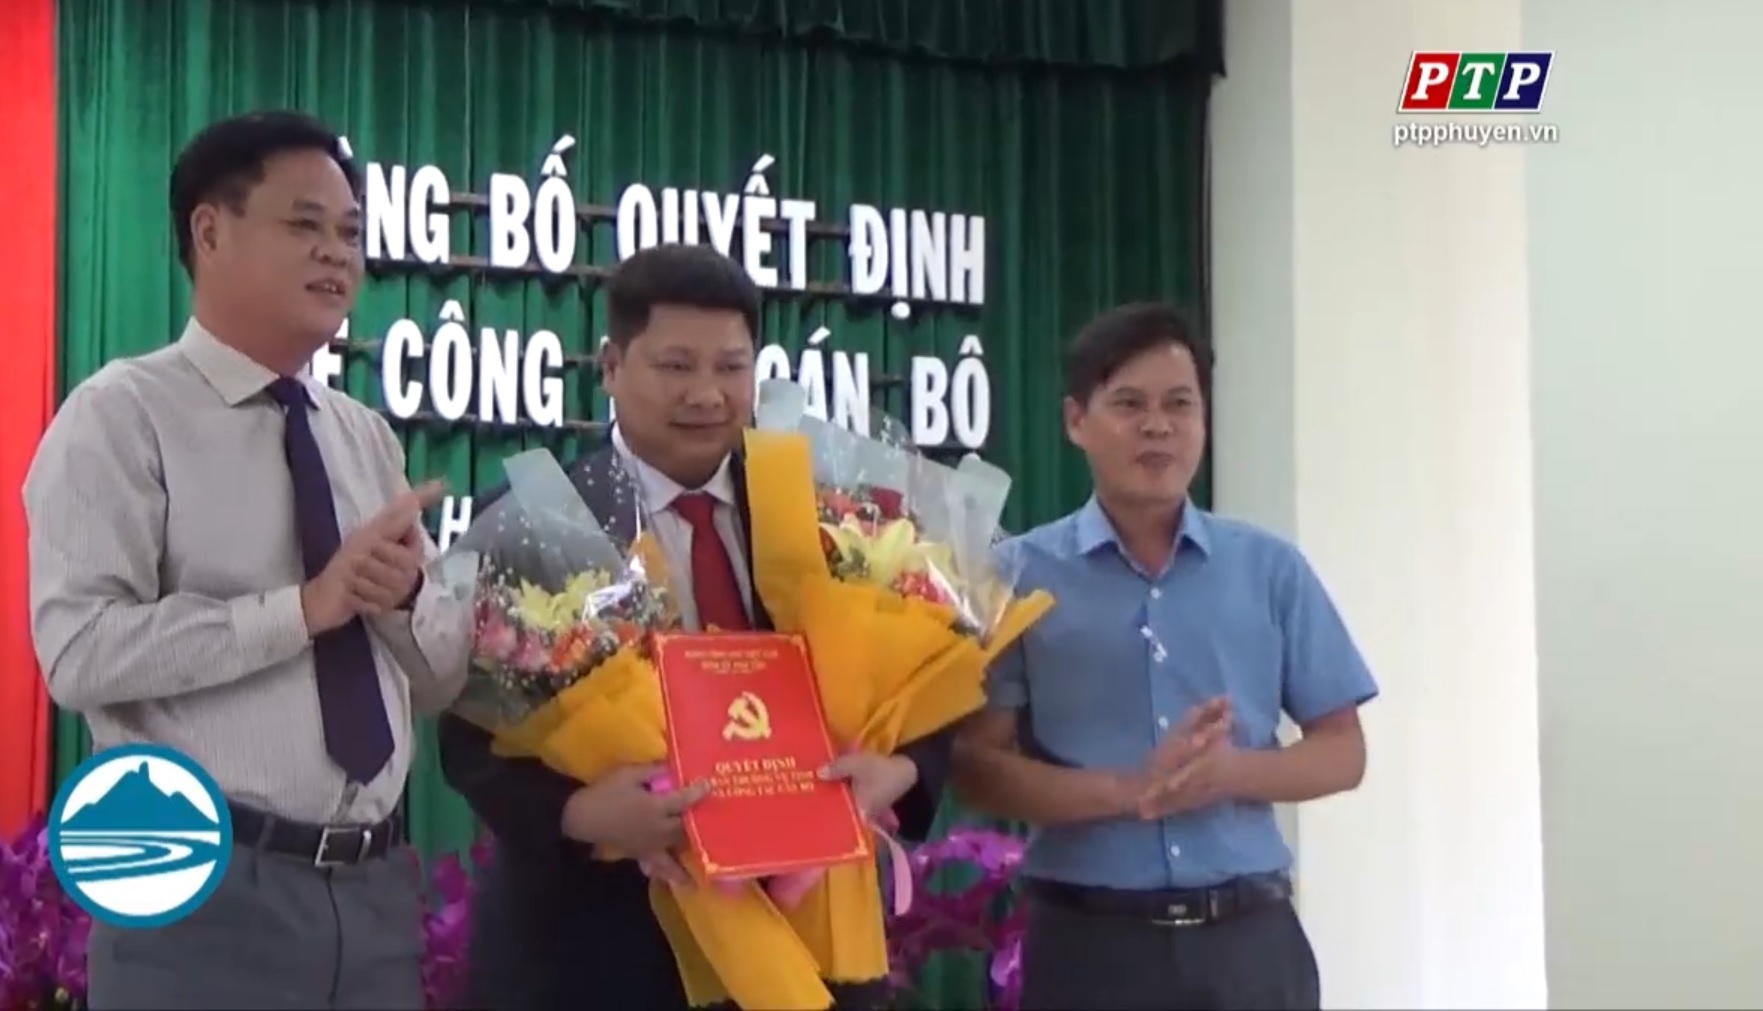 Tỉnh Ủy Phú Yên tổ chức trao quyết định điều động nhân sự thành phố Tuy Hòa